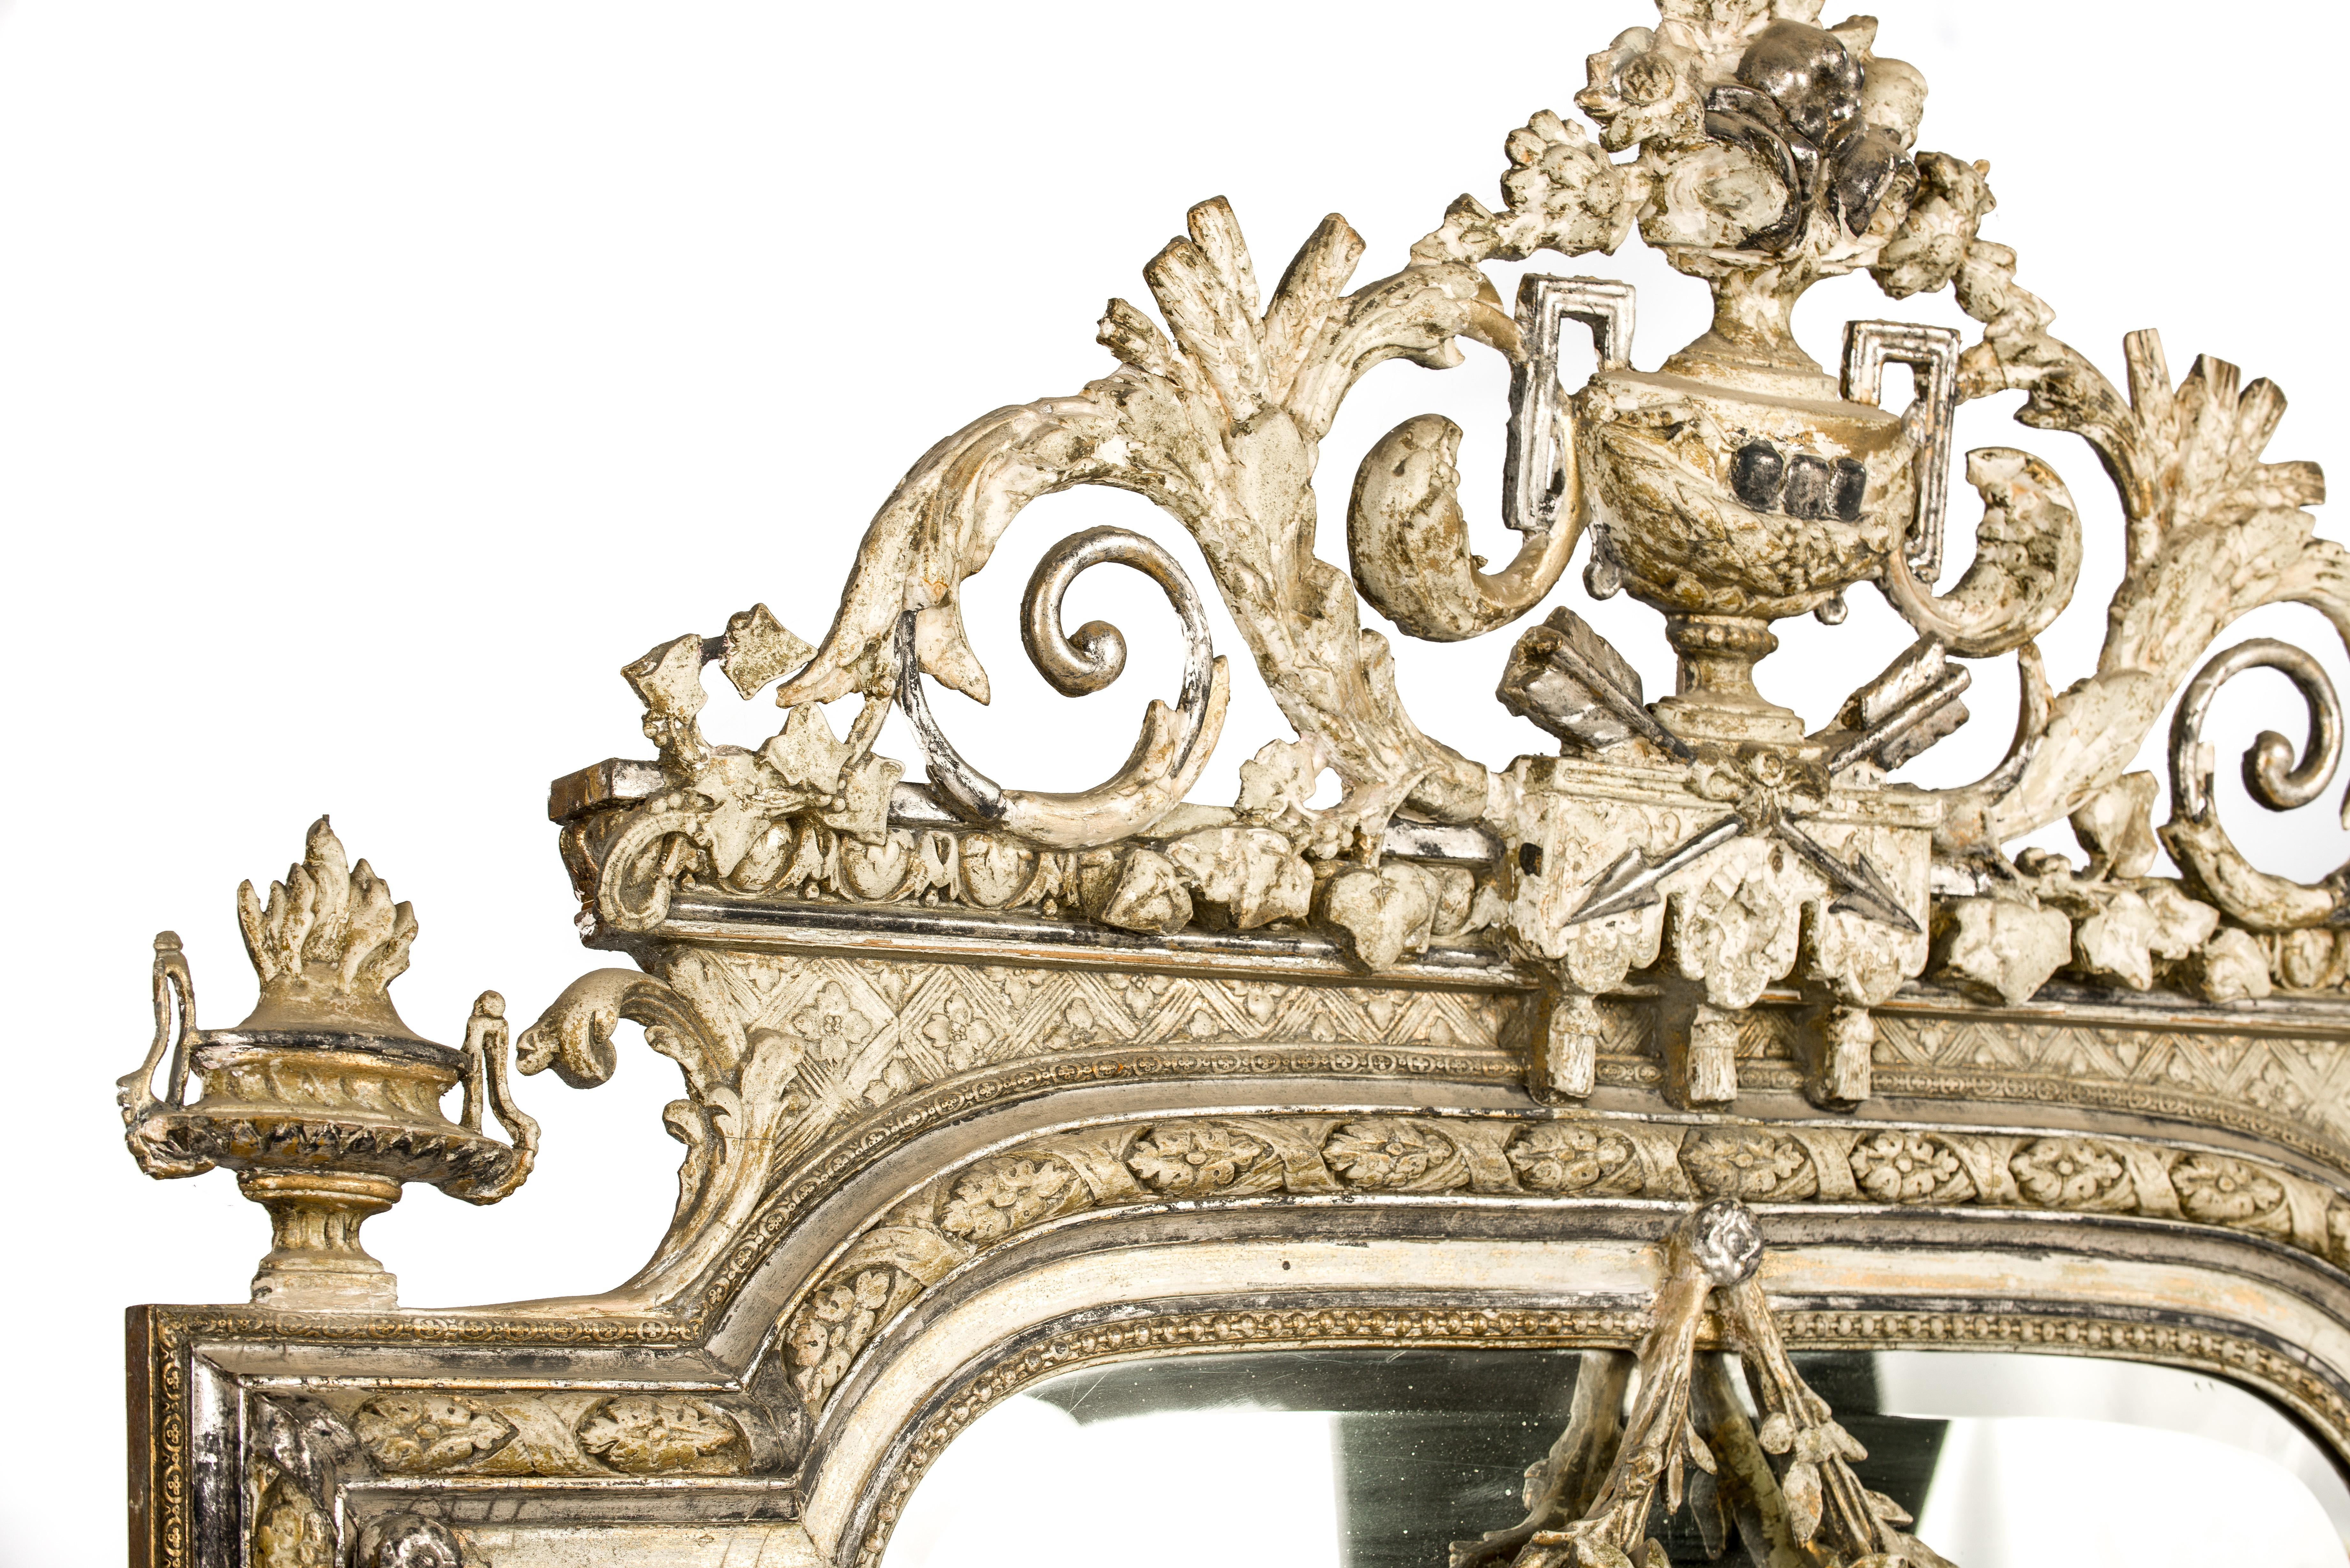 Un miroir Louis XVI impressionnant et richement décoré qui a été fabriqué dans le nord de la France en 1905. 
Le cadre du miroir a été fabriqué en pin massif, a un sommet en arc de cercle et a été décoré avec des ornements moulés. Le cimier orné